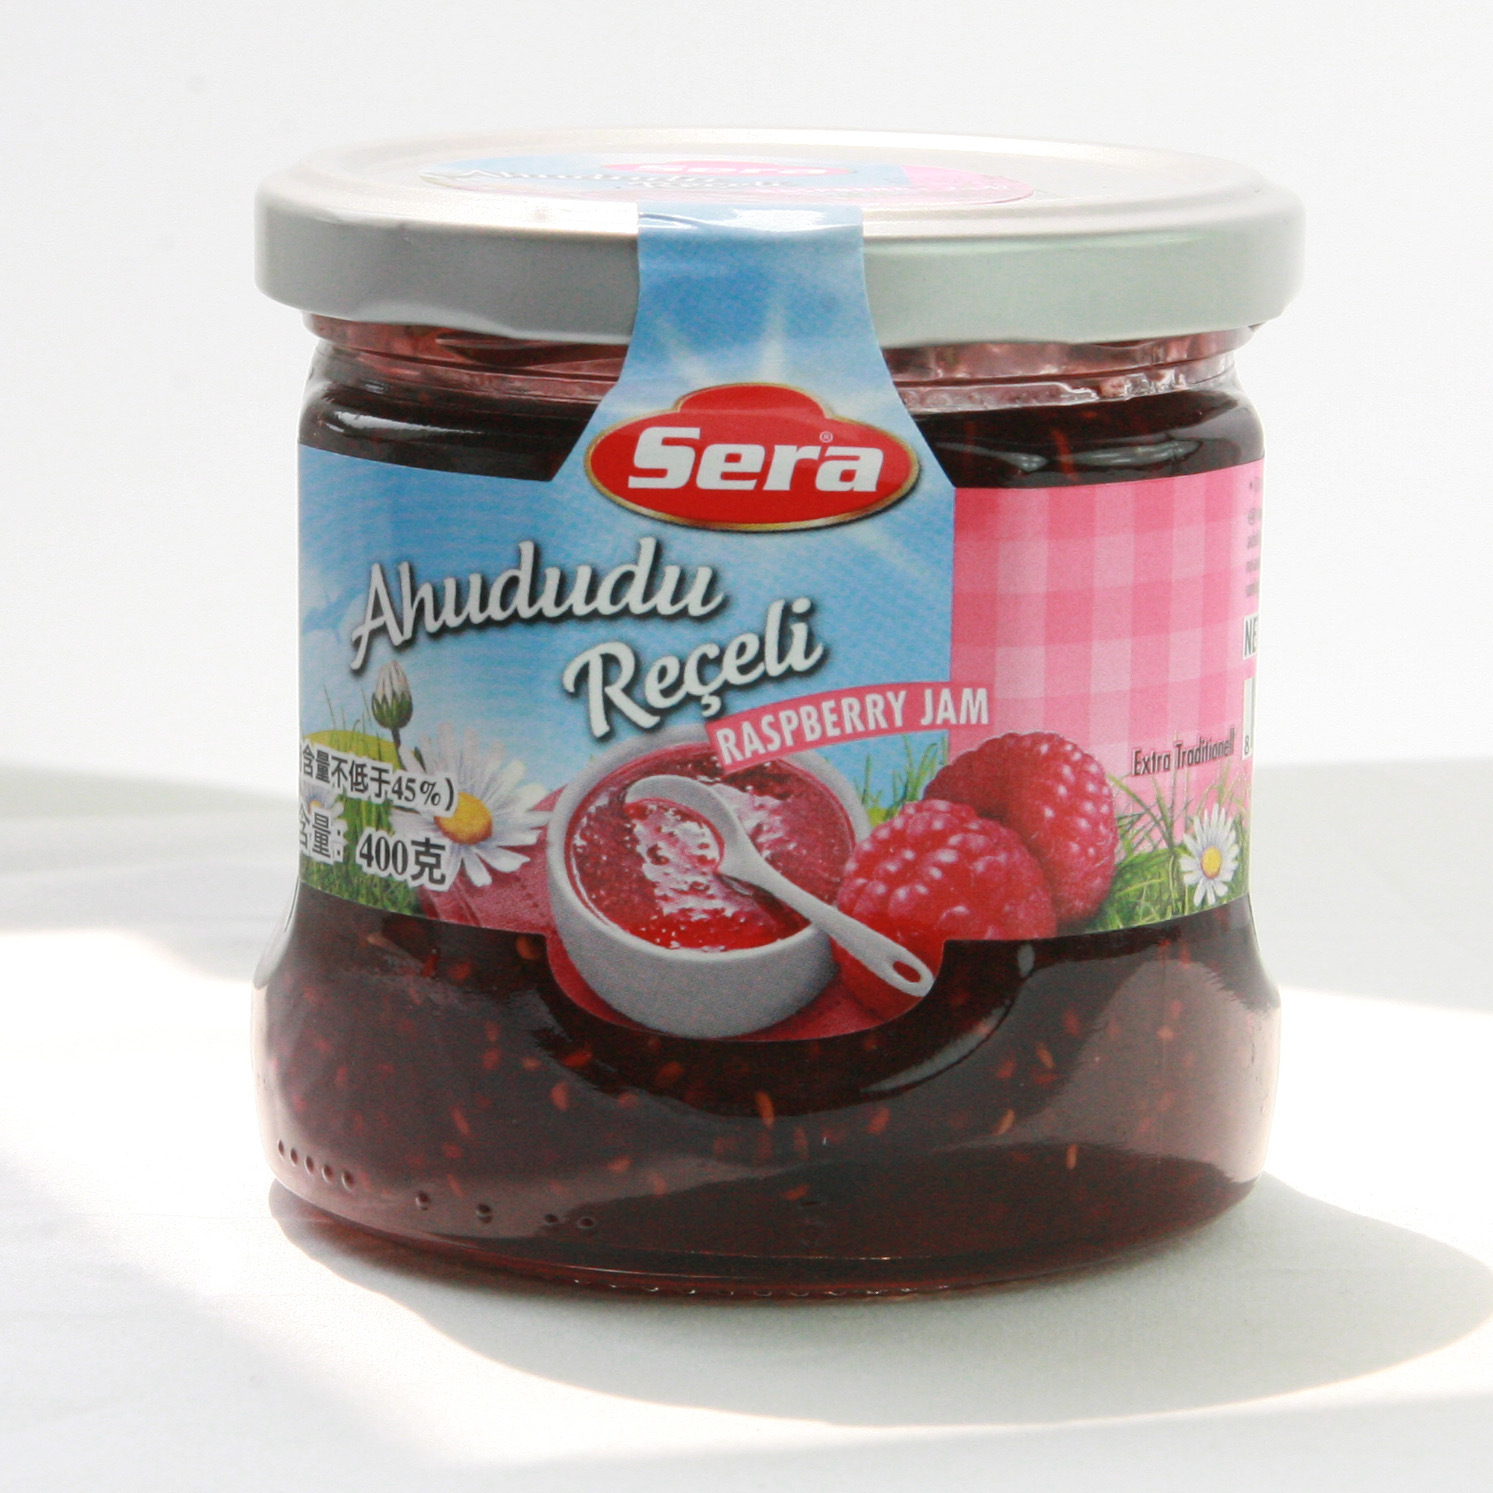 土耳其进口食品休闲零食调味品 艾瑞斯魔法花园树莓果酱400g*12瓶